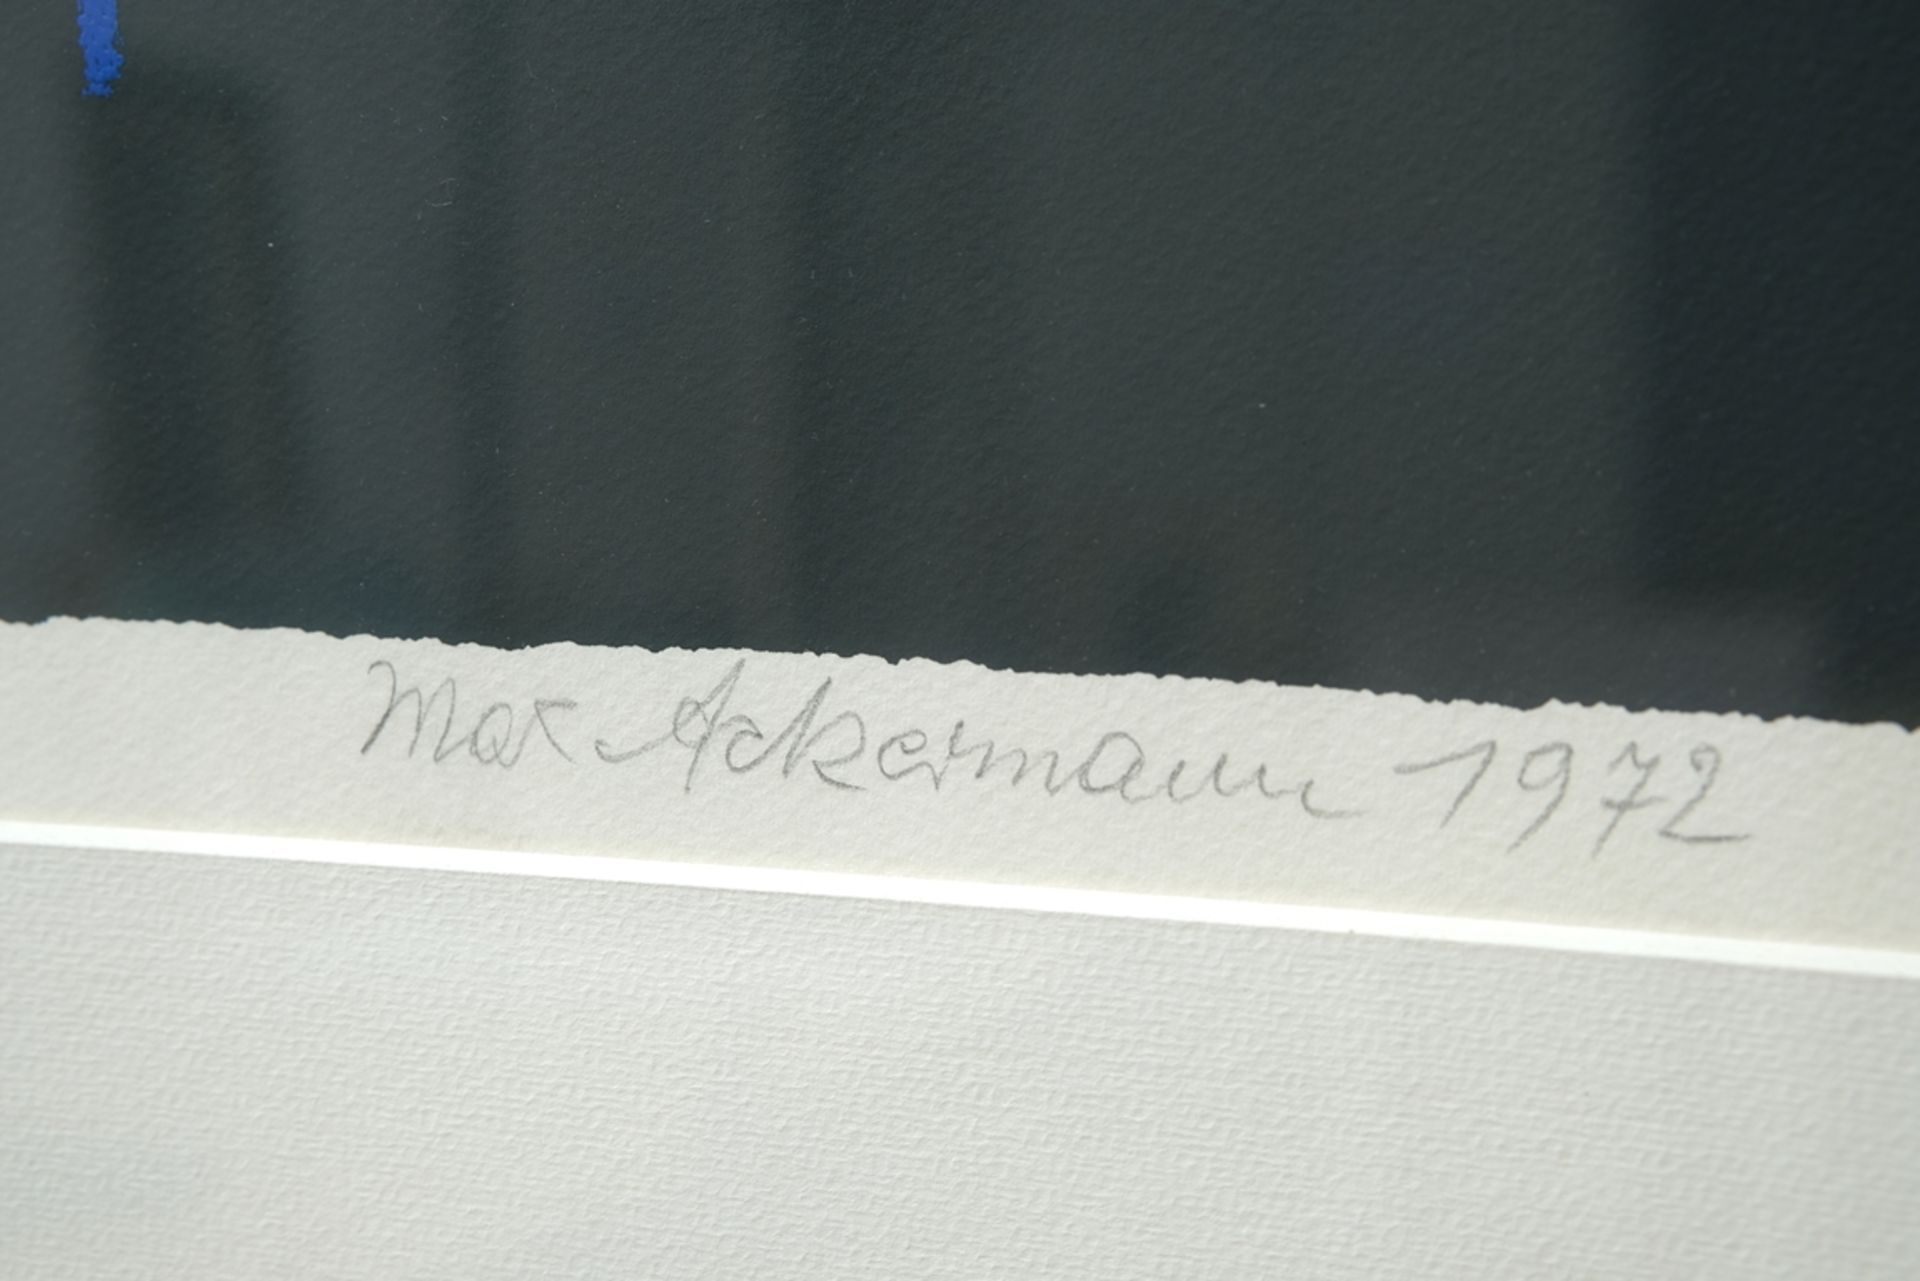 Ackermann, Max (1887-1975) Abstrakte Komposition in Blau, 1972, Serigrafie in Farbe.  - Bild 4 aus 4